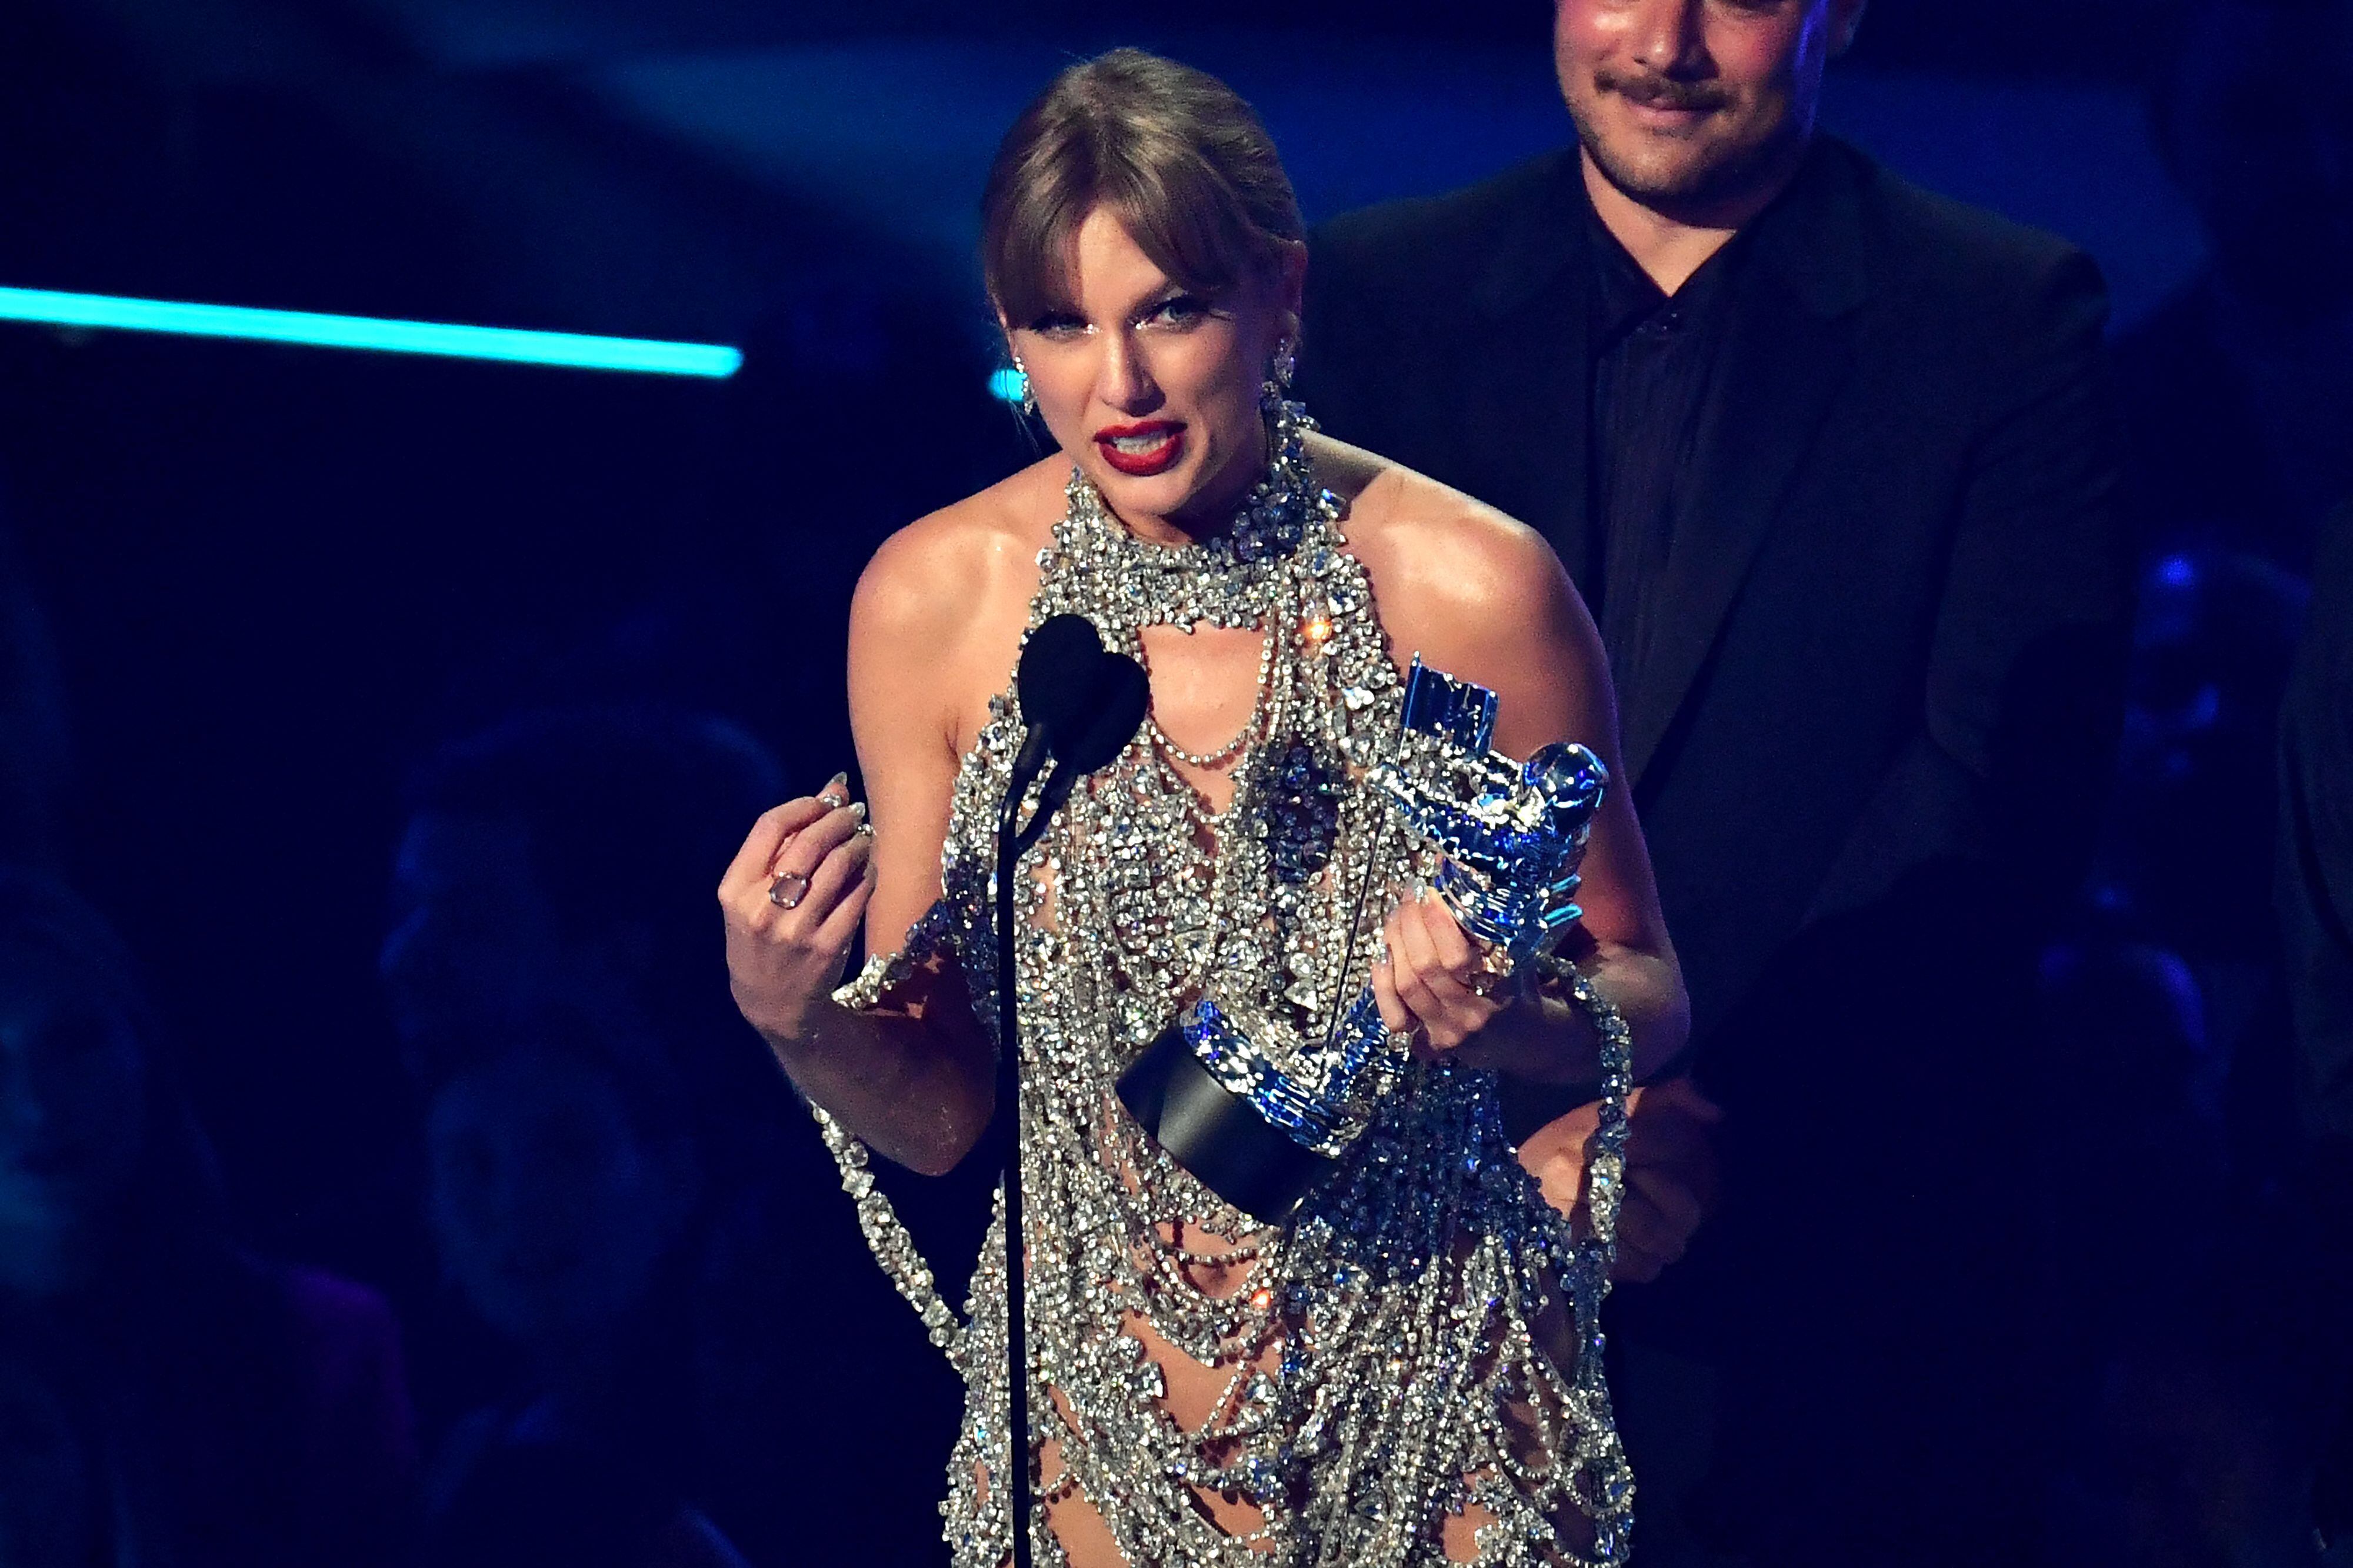 Taylor Swift asistió a la gala con un vestido hecho con cristales.  Por su producción 'All Too Well', la artista ganó el premio al mejor video del año.
